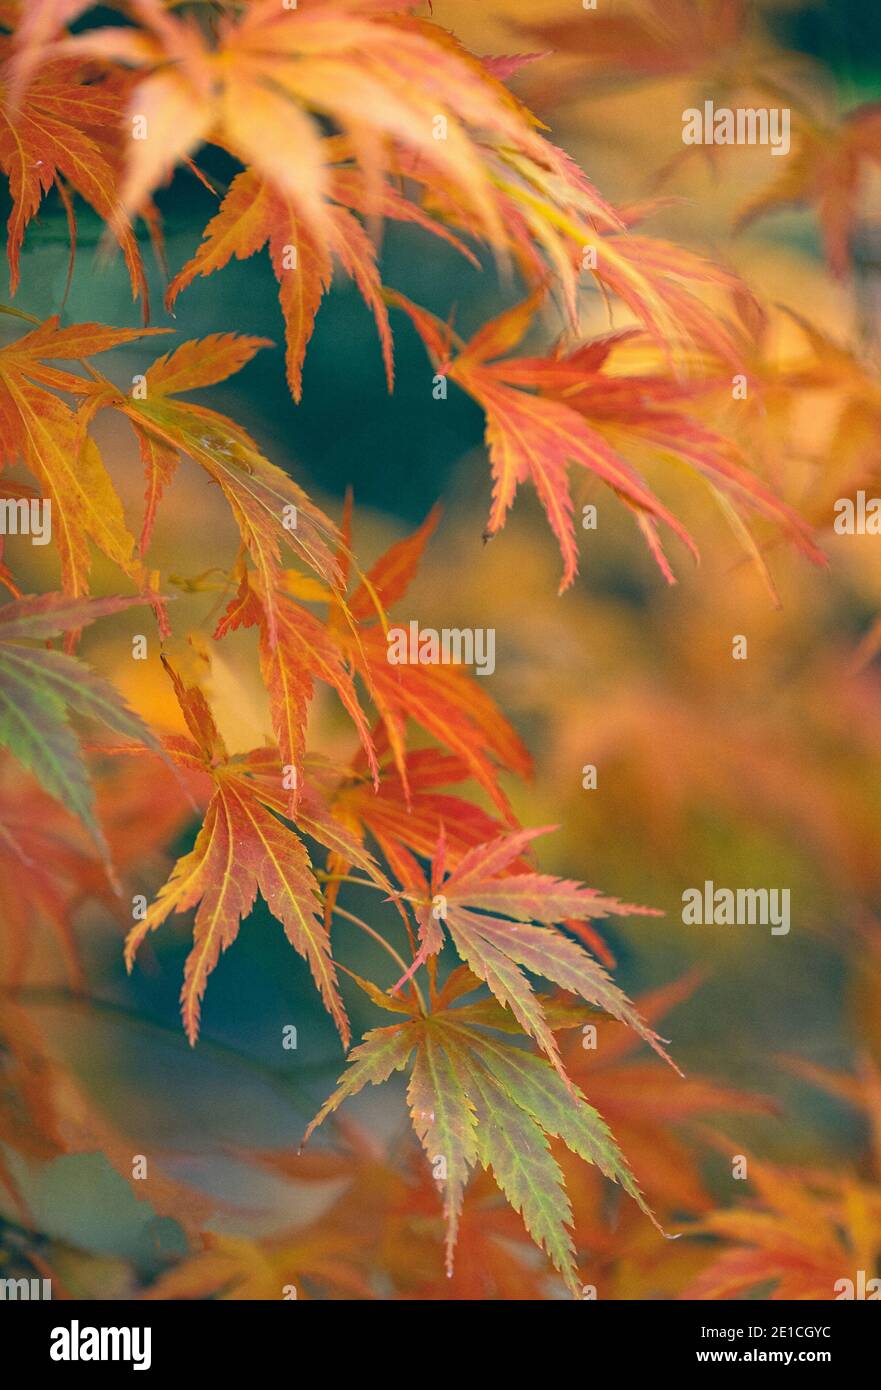 Acer / Maple hojas Autumnal acer hojas en los árboles en Batsford Arboretum, Worcestershire Foto de stock